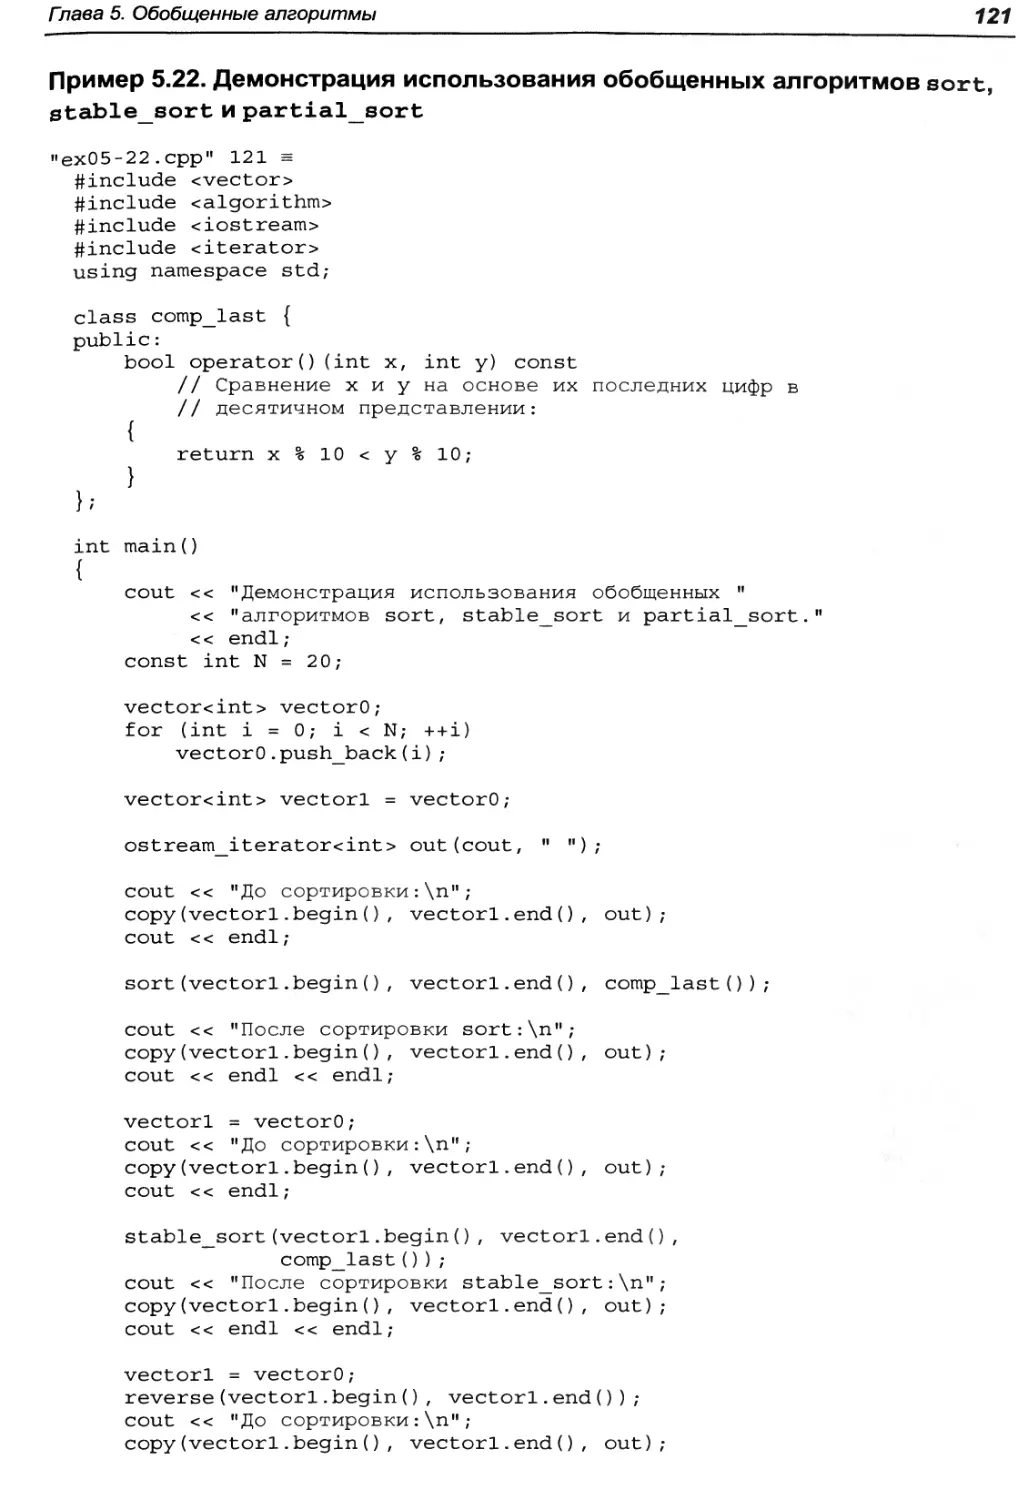 Пример 5.22. Демонстрация использования обобщенных алгоритмов sort, stable_sort и partial_sort